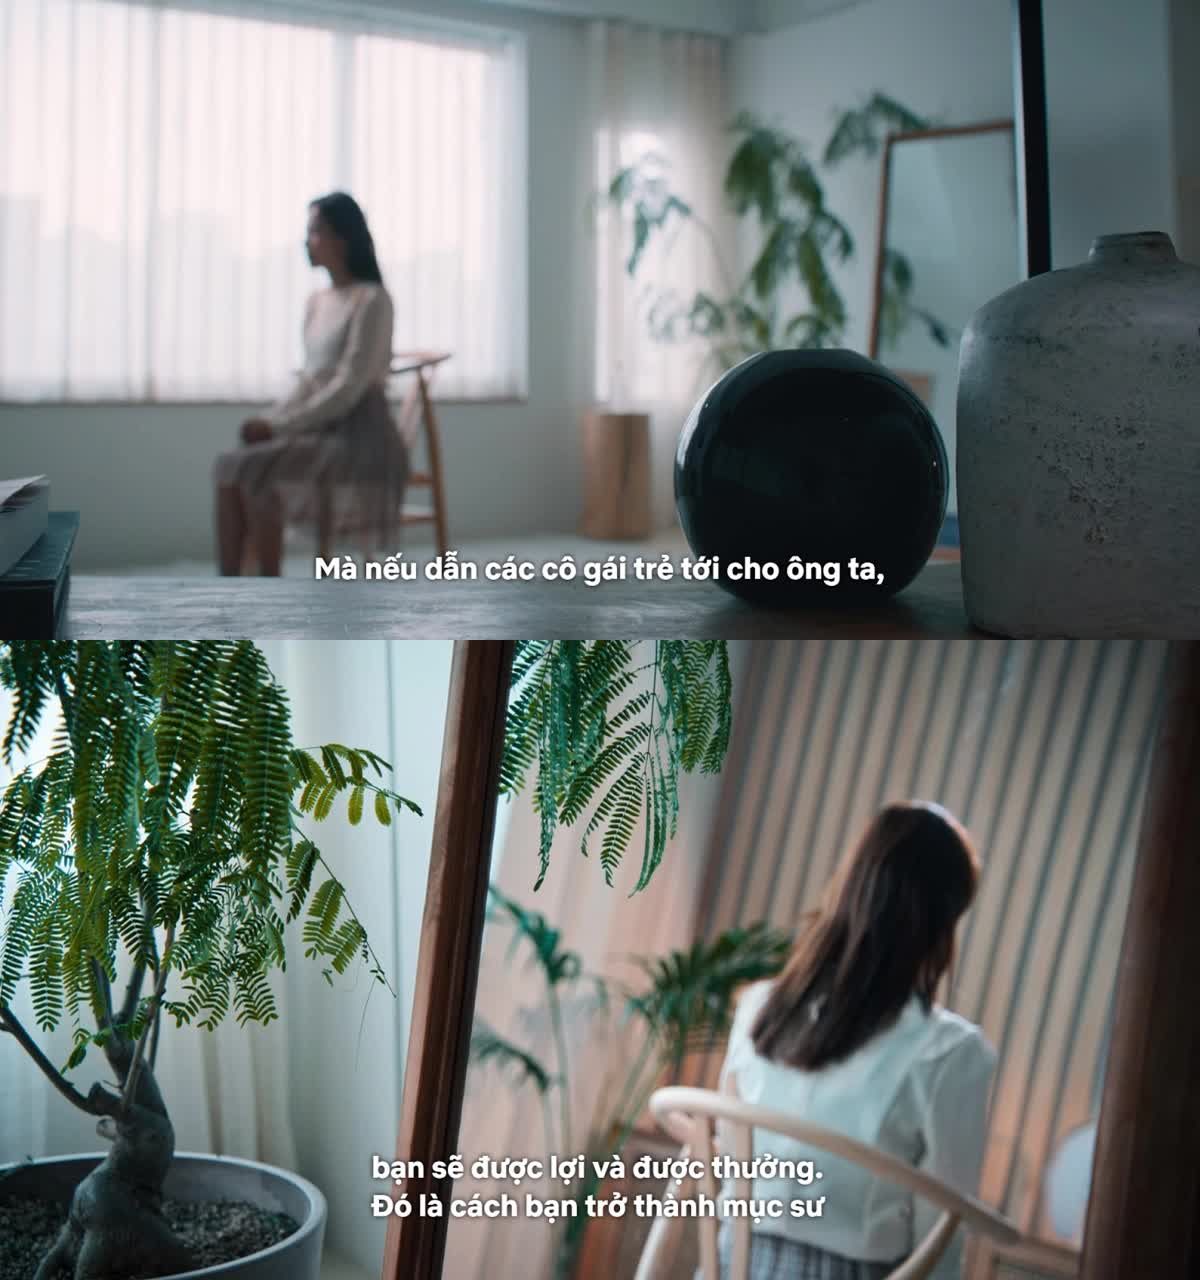 Sự thật đáng sợ về nạn xâm hại tình dục ở dị giáo trong phim Hàn gây sốt Netflix - Ảnh 7.